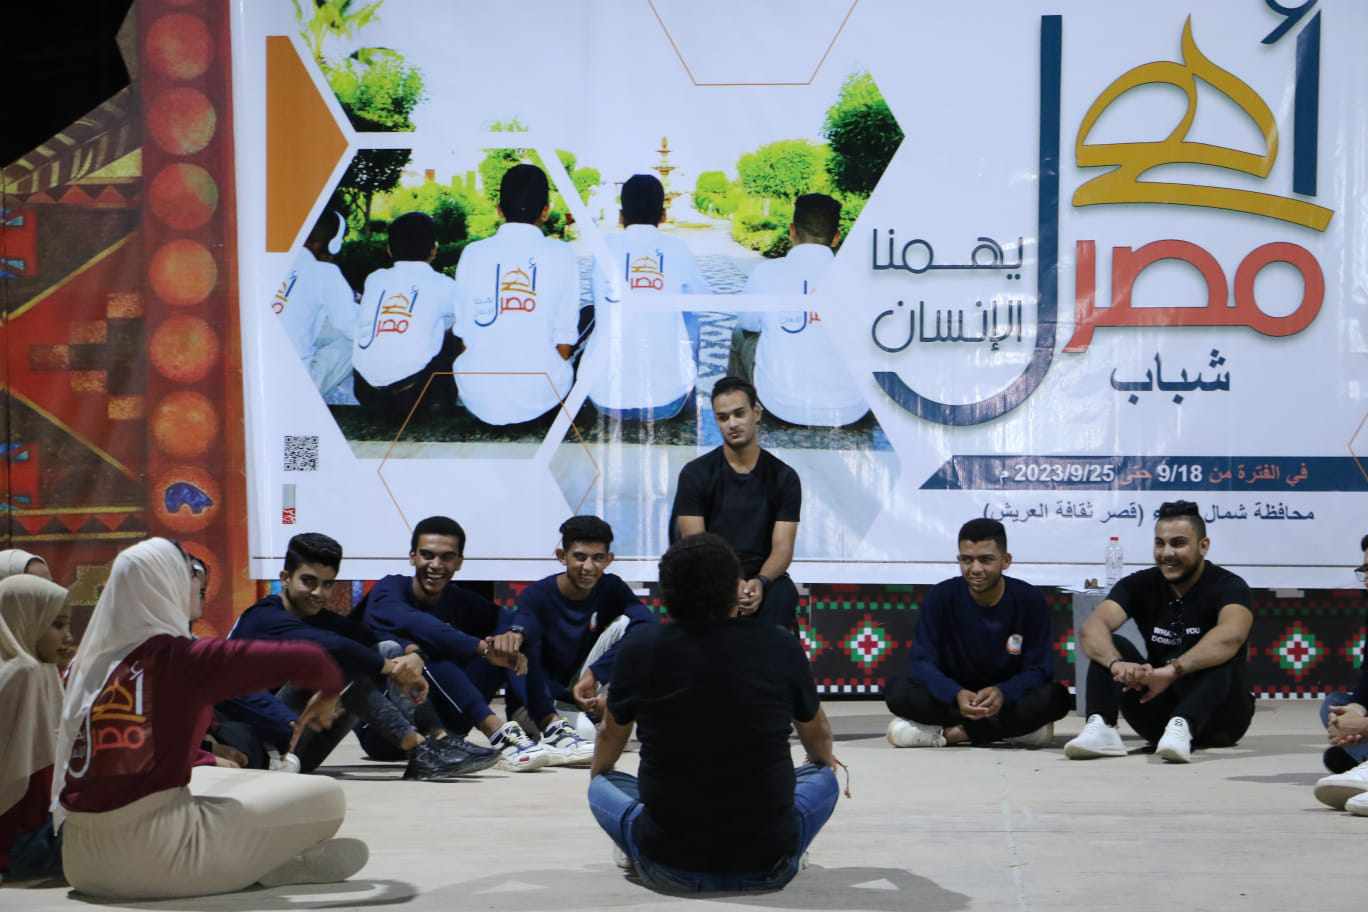 التفكير الإبداعي للشباب في أول لقاءات ملتقى "أهل مصر" بالعريش | صور - بوابة  الأهرام